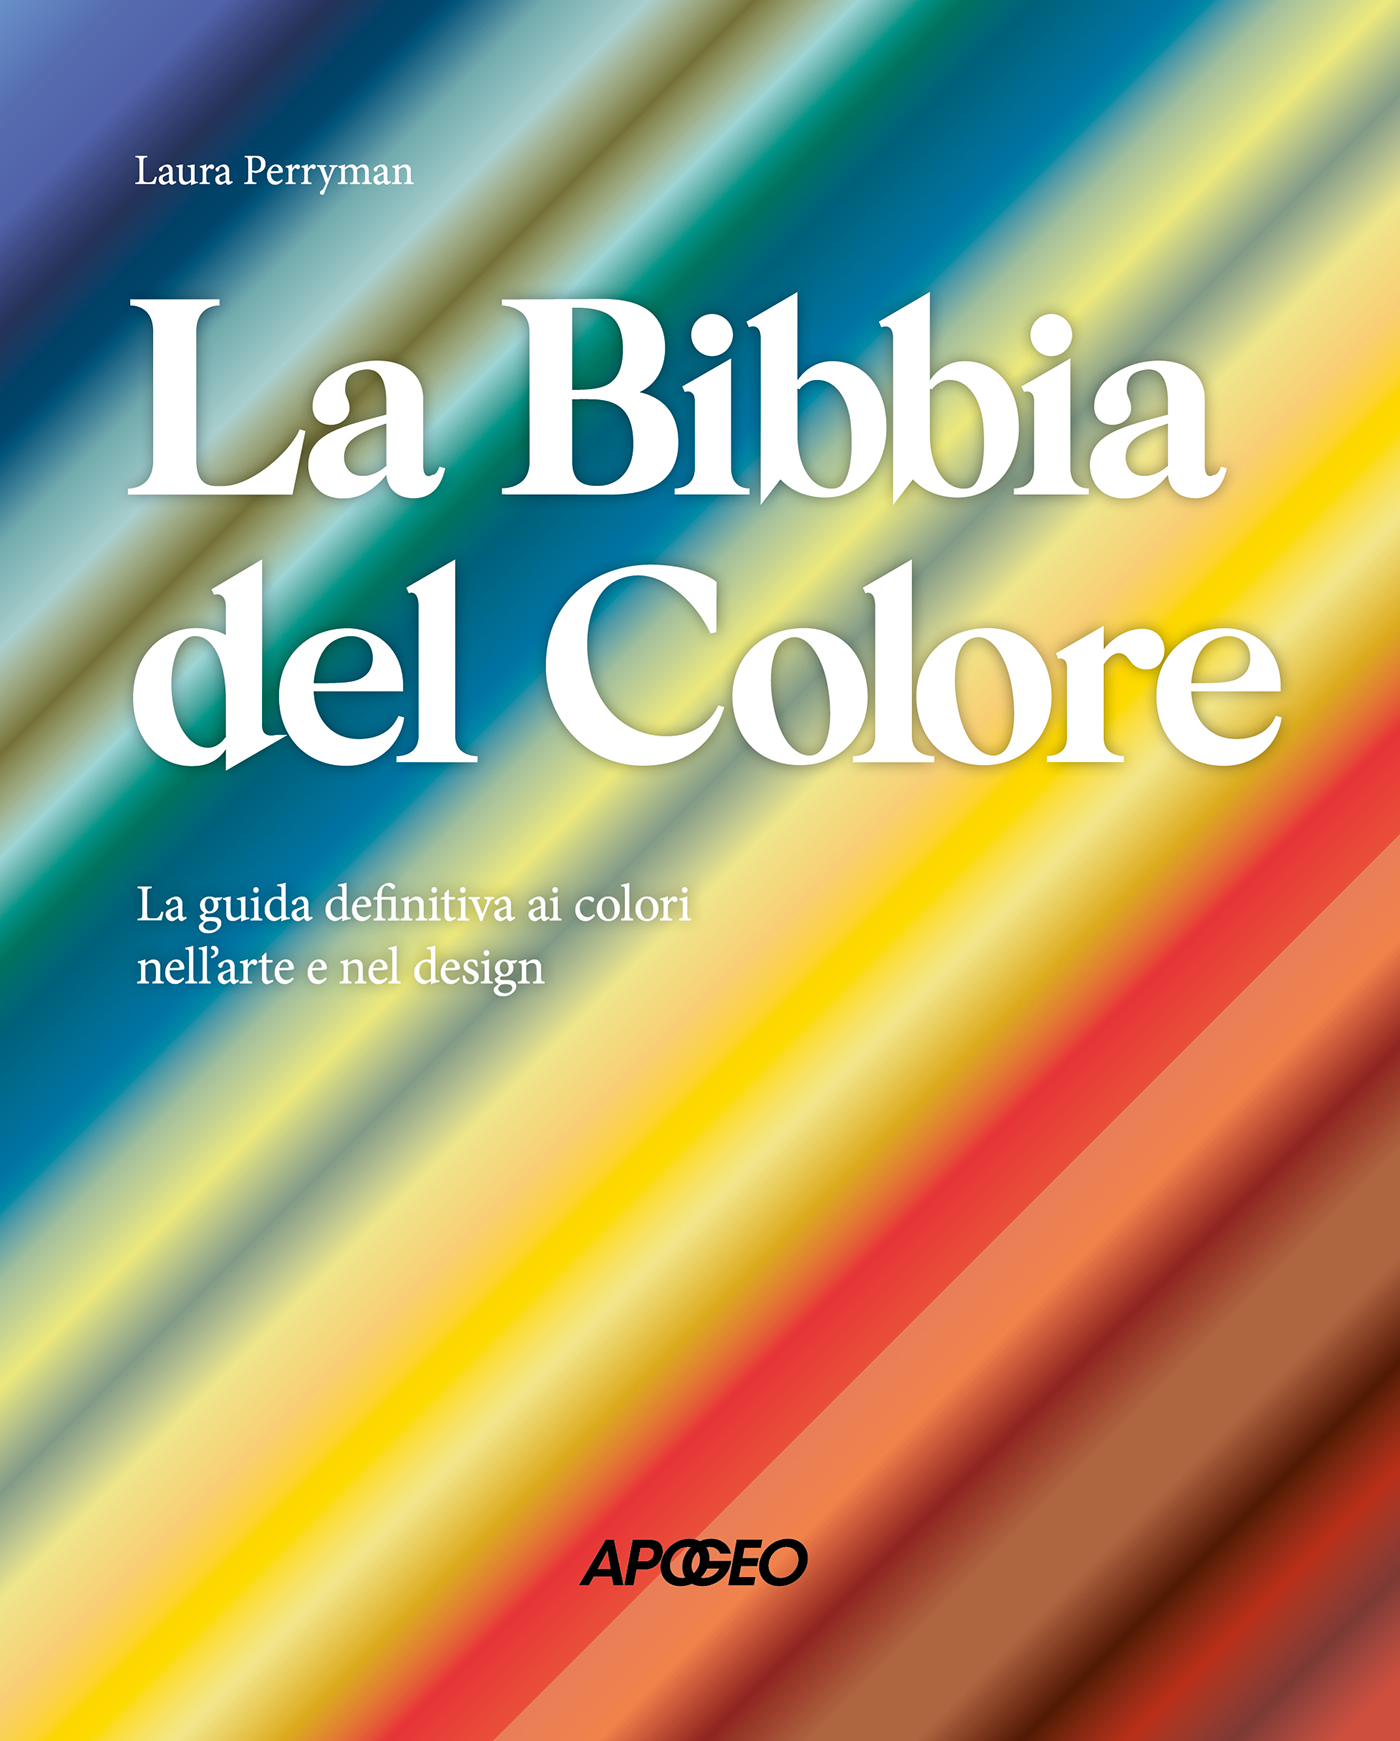 La Bibbia del colore, di Laura Perryman